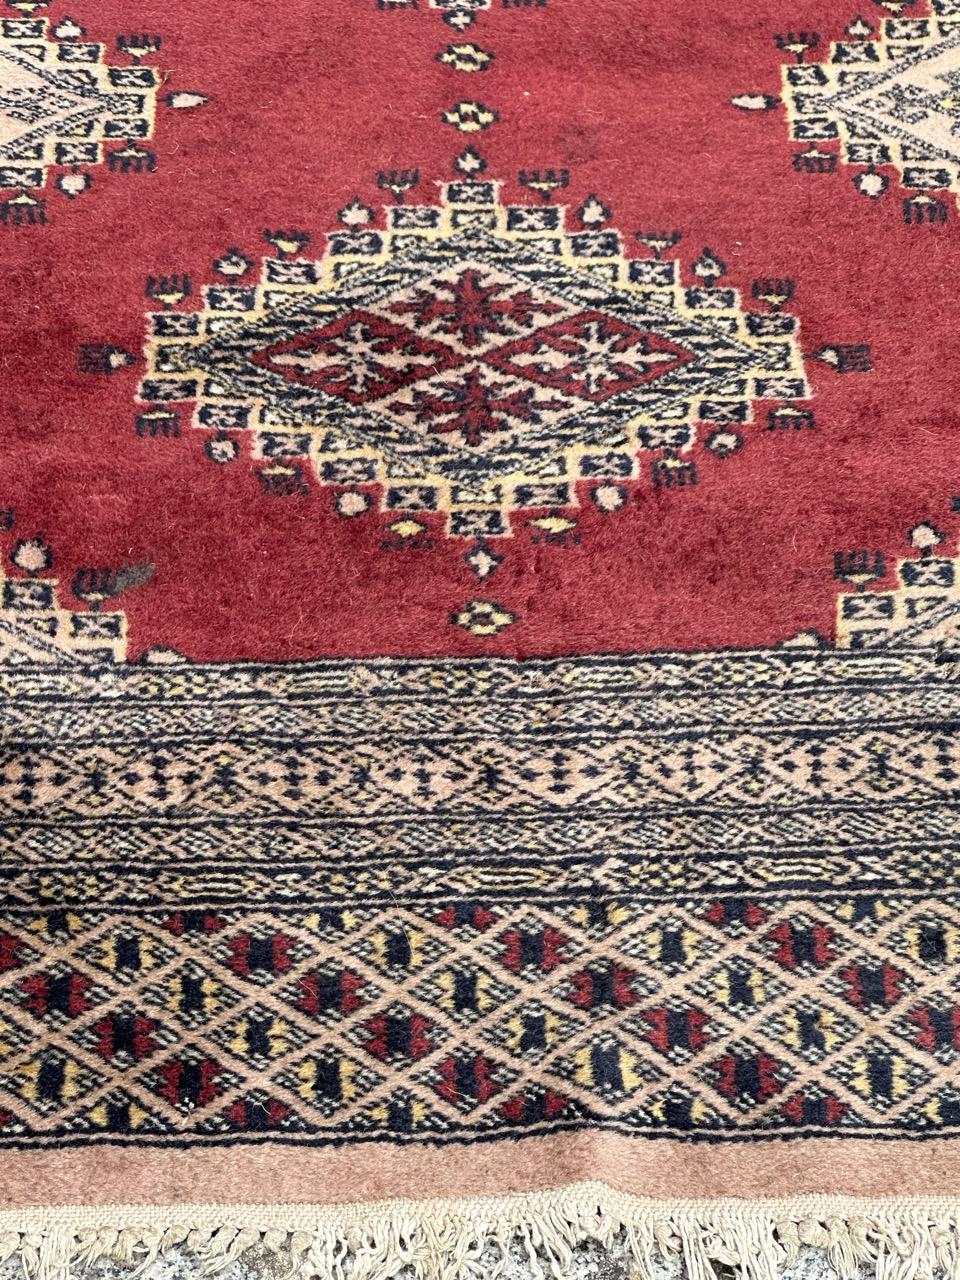 Magnifique tapis pakistanais vintage avec un design des tapis turkmènes et de belles couleurs avec du violet, du rose, du gris et du noir, entièrement et finement noué à la main avec de la laine sur une base en coton. 

✨✨✨
